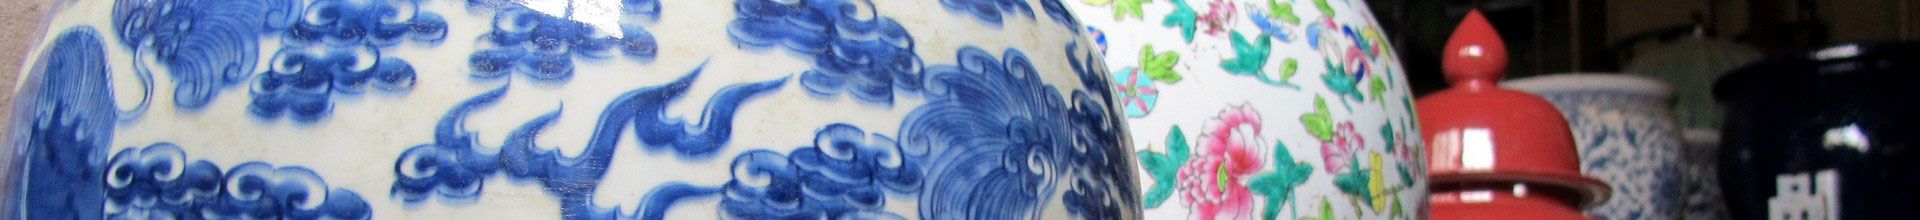 La céramique chinoise et l’invention de la porcelaine